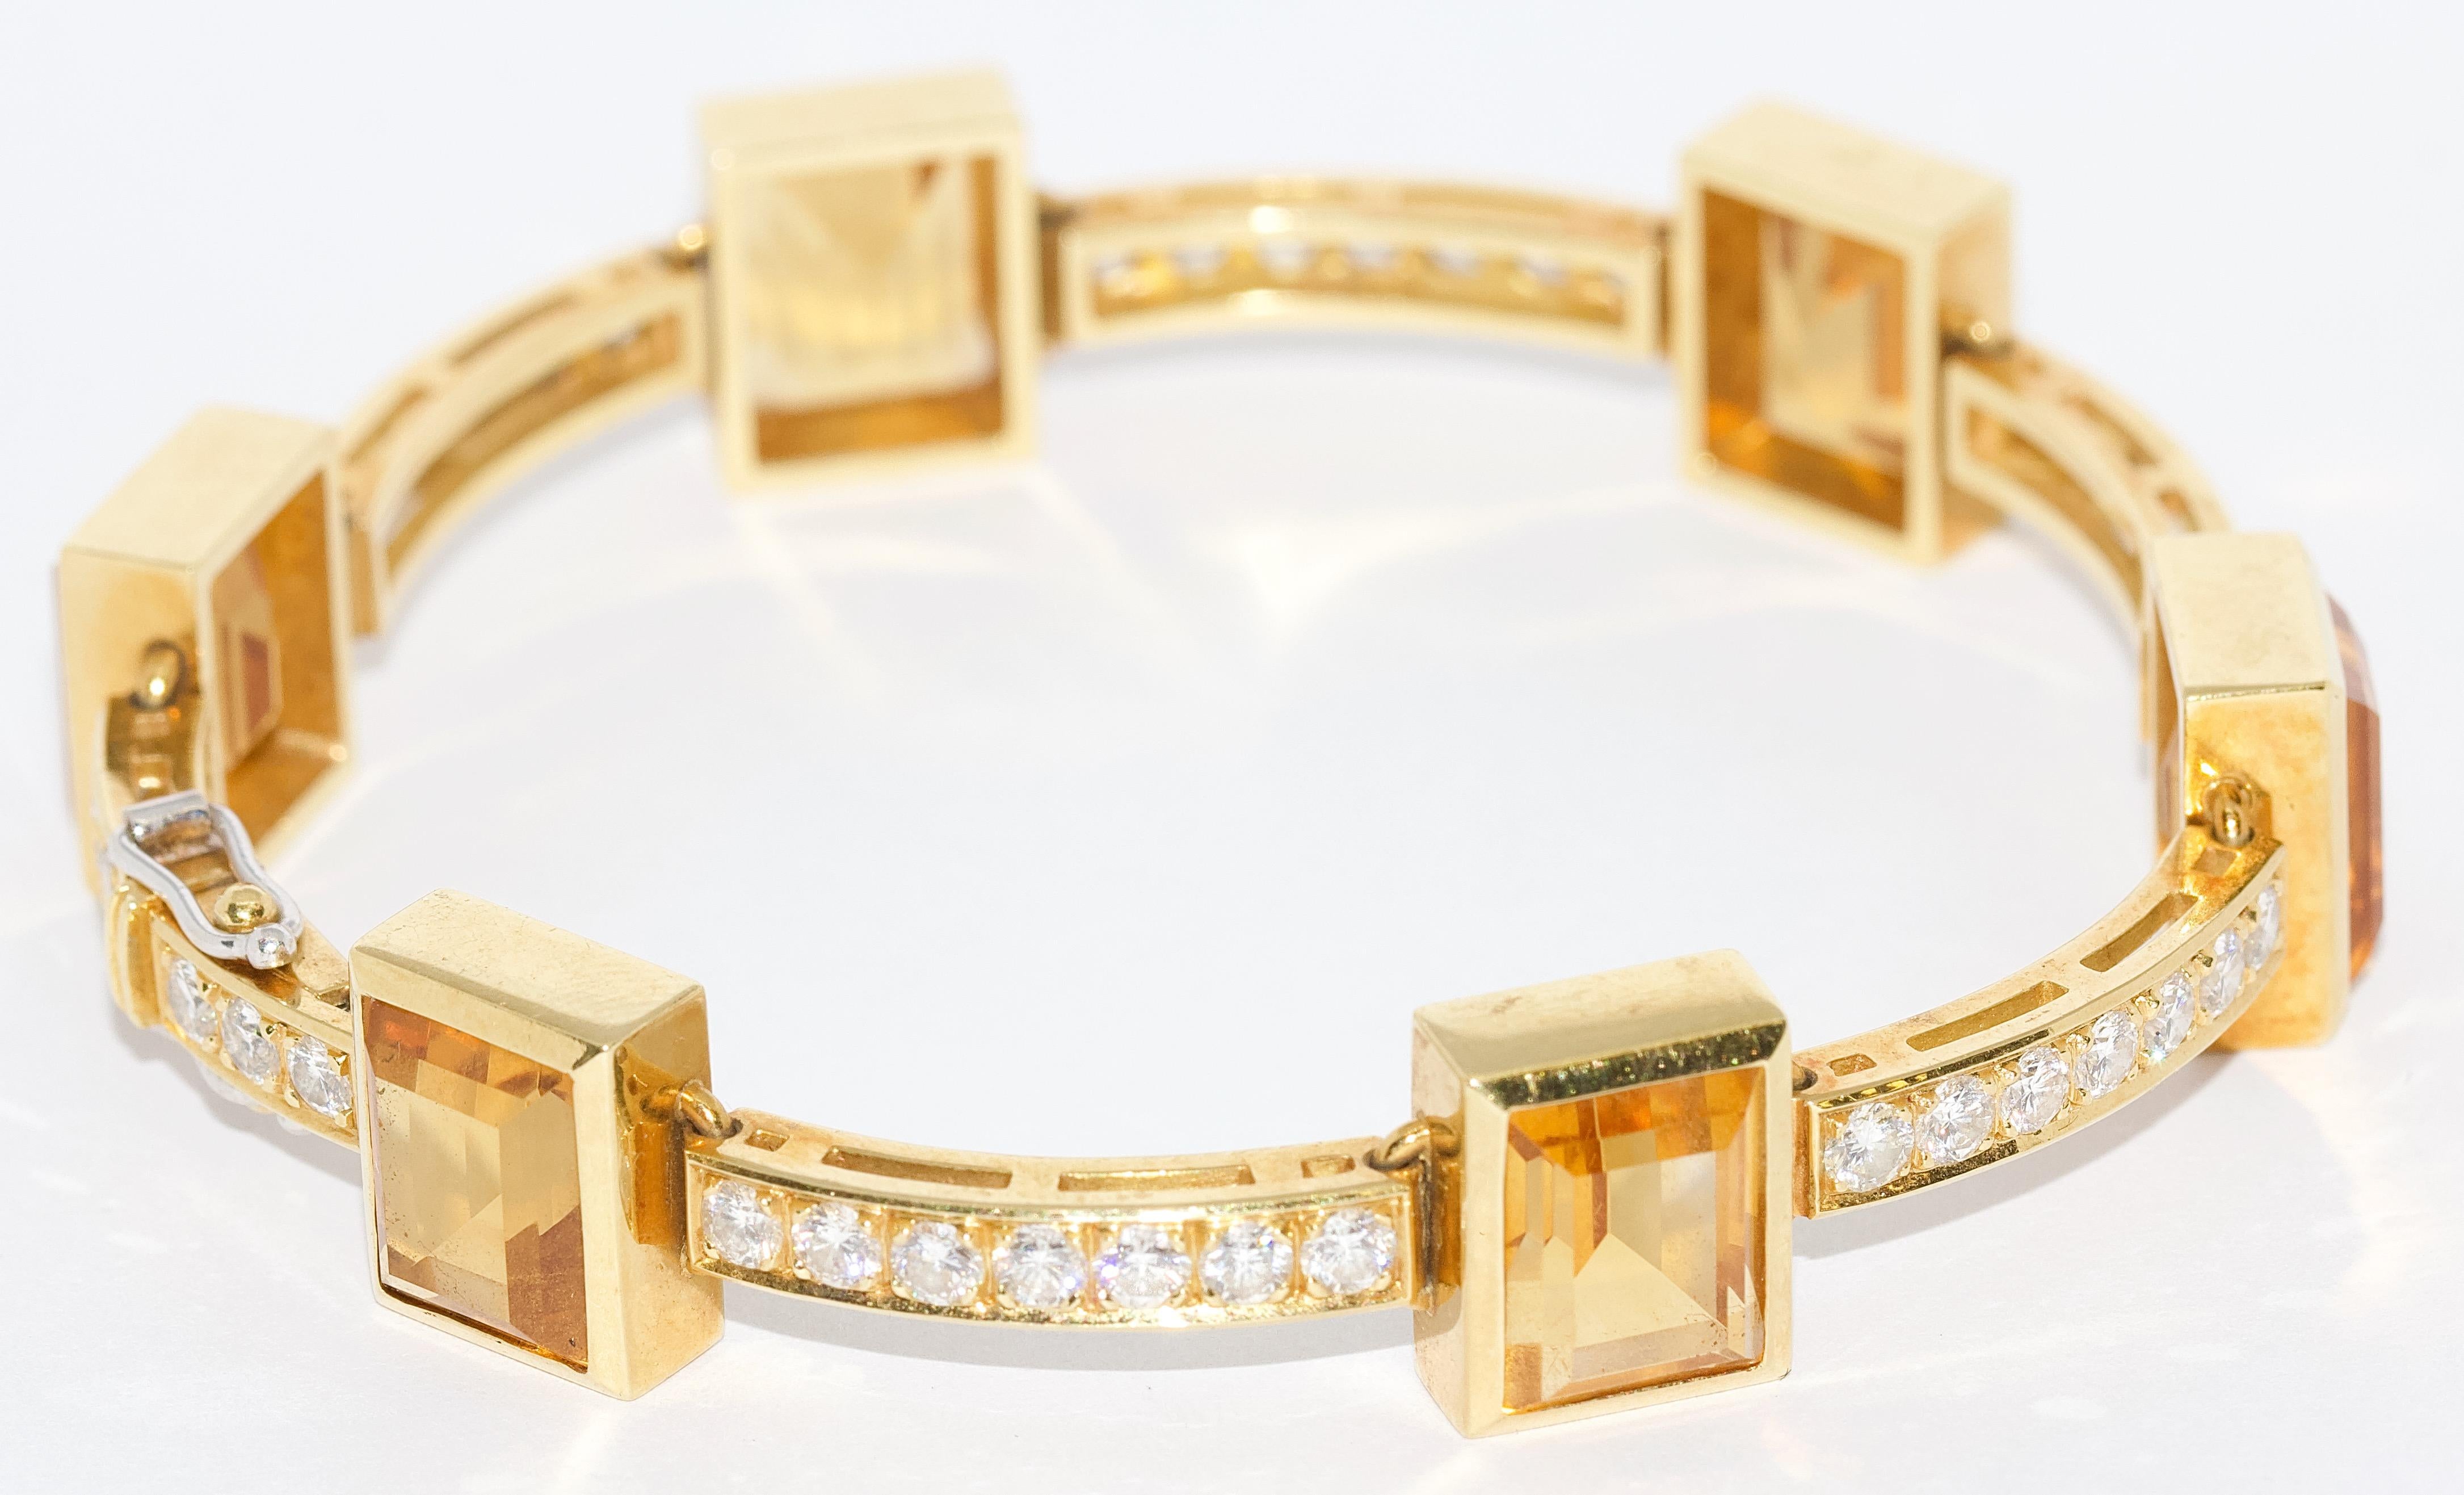 Bracelet moderne pour femme, en or 18 carats, serti de citrines et de 41 diamants.

Le bracelet est serti de 41 diamants ronds, Top Wesselton, VVS1 d'un poids total d'environ 2,5 carats et de six citrines facettées.

Parfait état.
Certificat